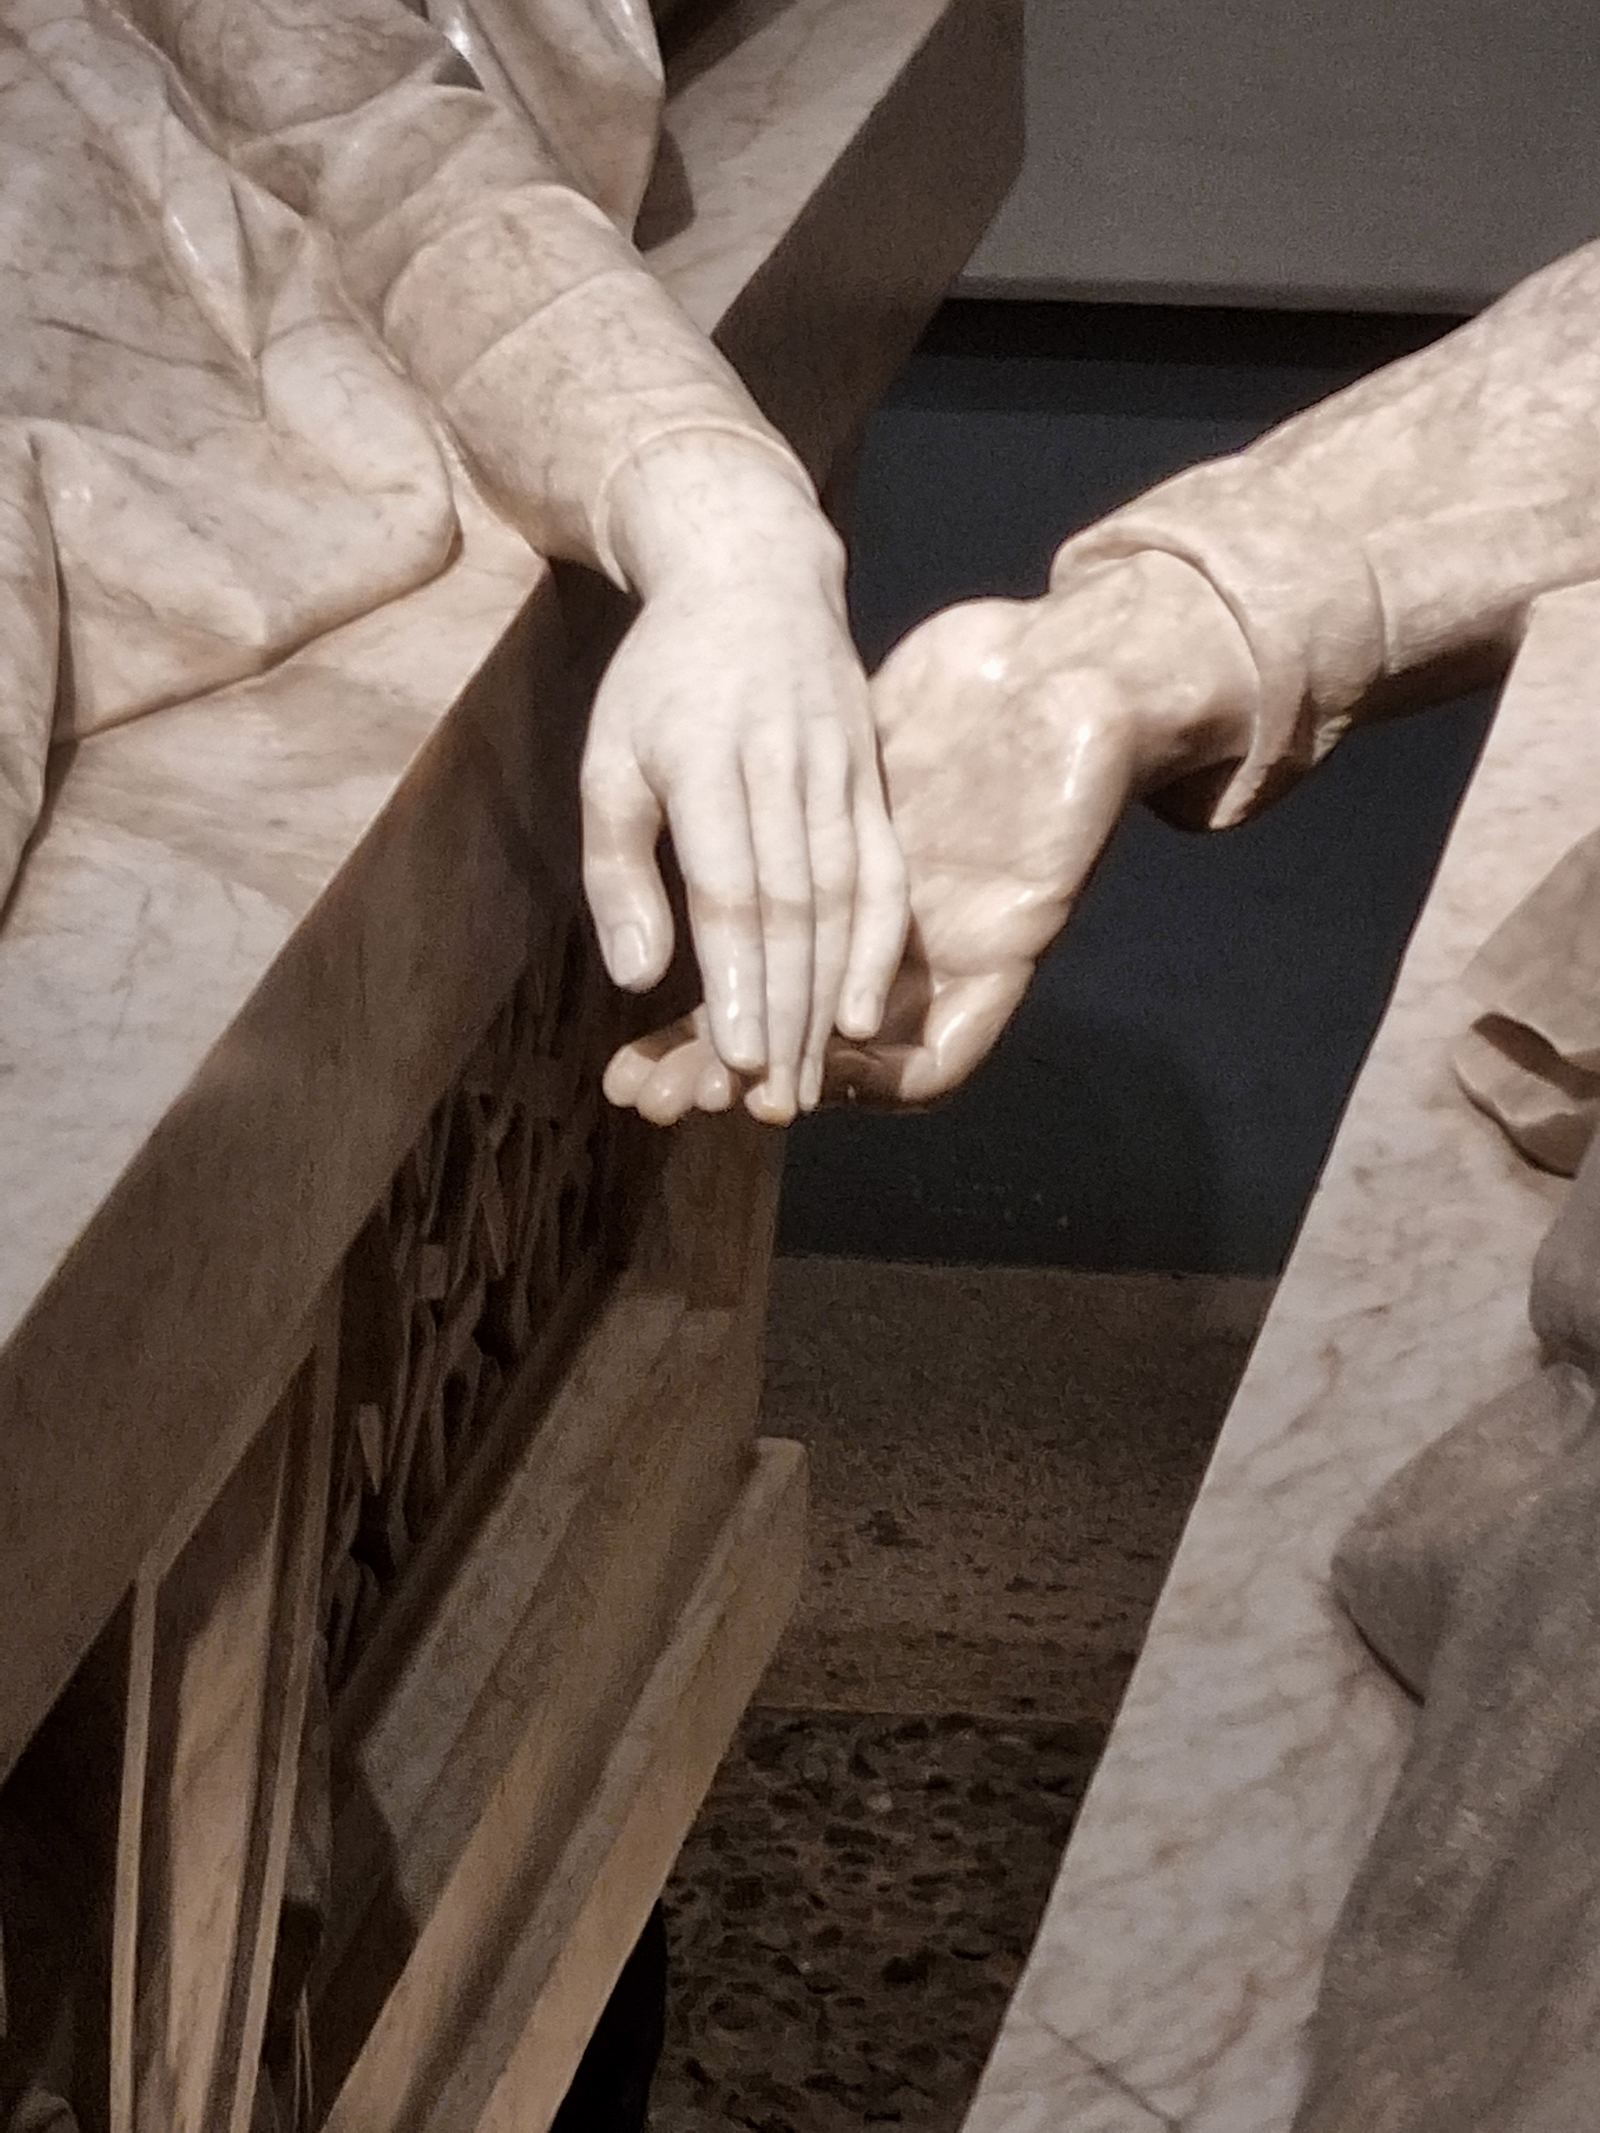 Gli amanti di Teruel il tragico epilogo: le loro mani si intrecciano tra i sarcofaghi